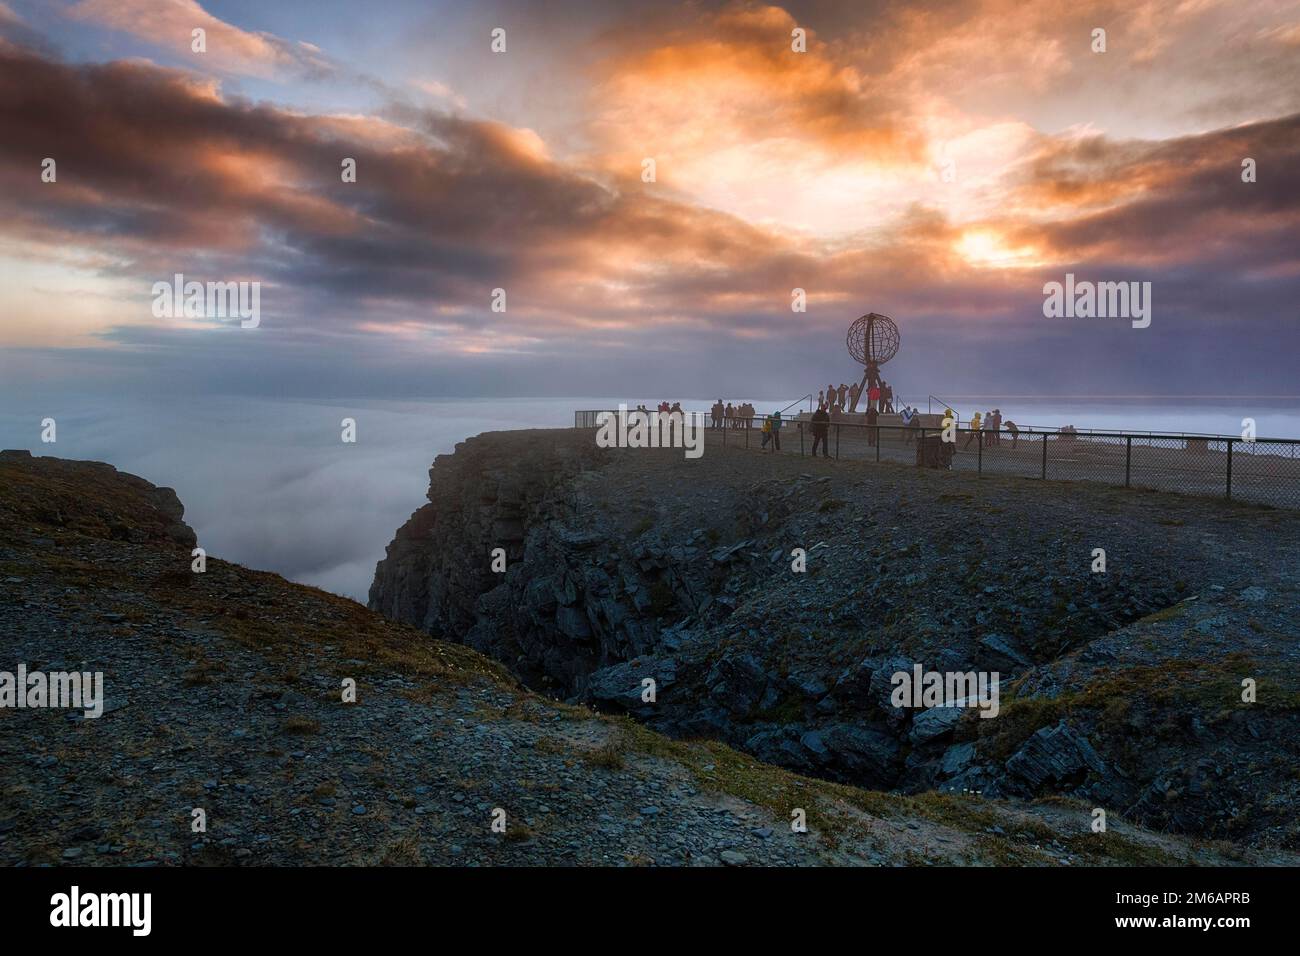 Blick vom Besucherzentrum auf die felsige Küste und Besucherplattform mit Globus, Mitternachtssonne hinter Wolken, Nordkap bei Nacht, Nordkapp, Mageroya Stockfoto